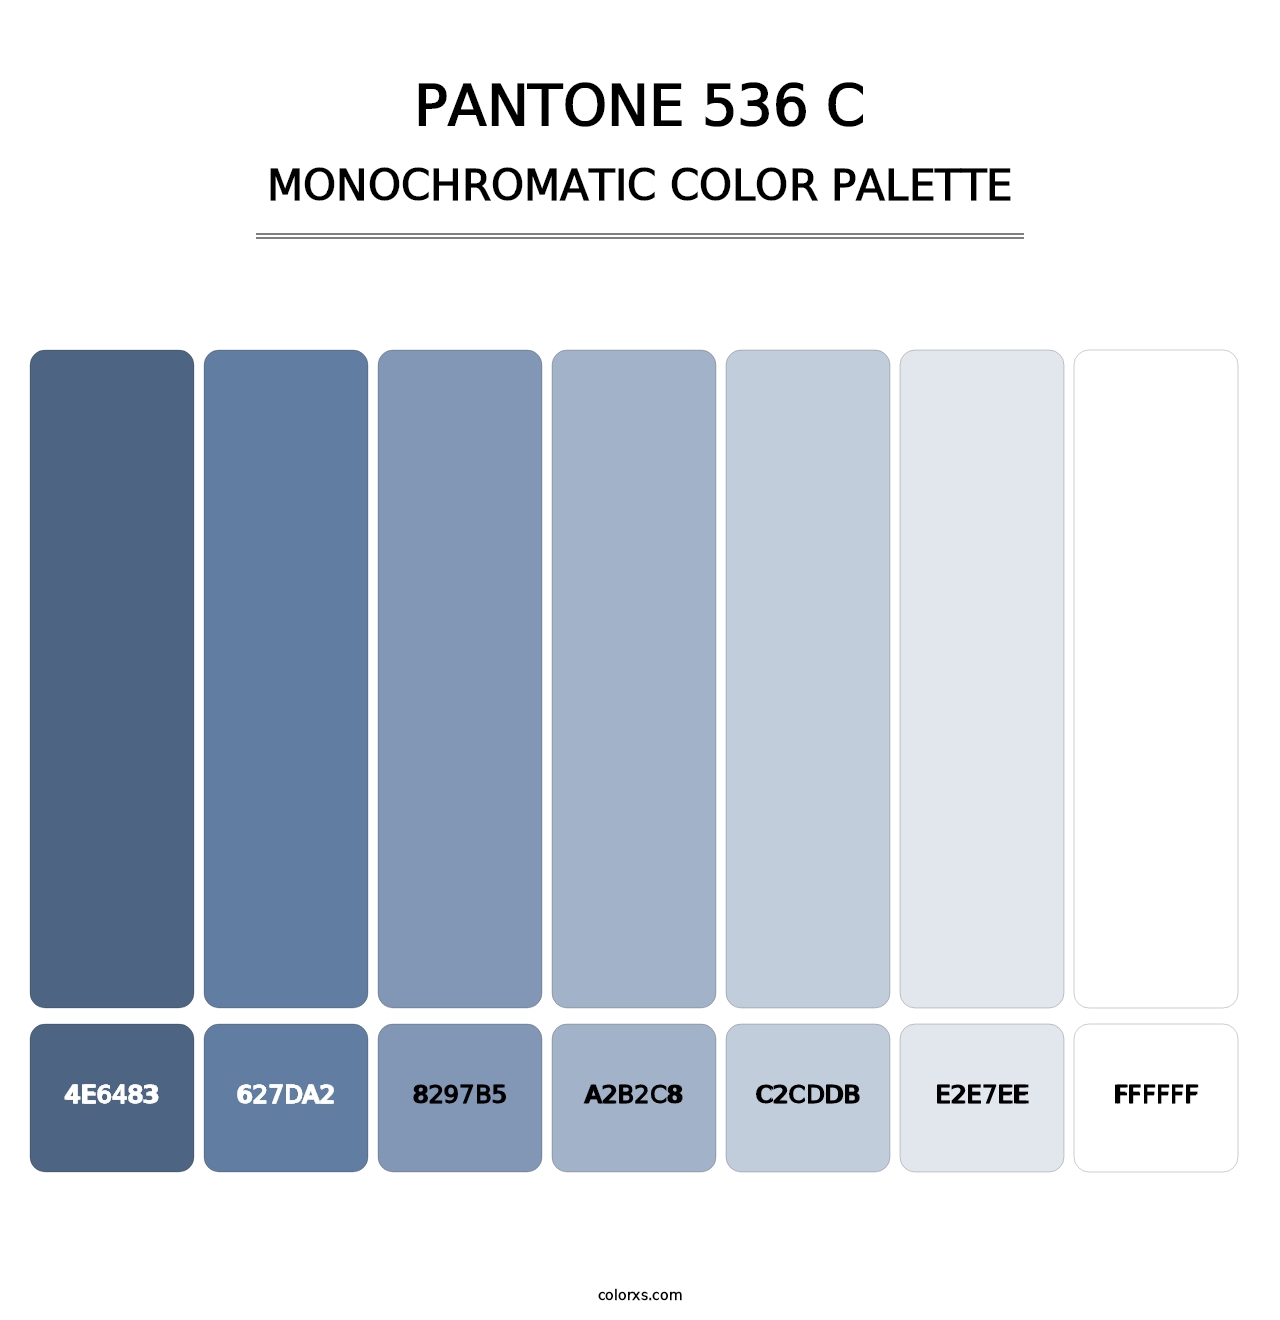 PANTONE 536 C - Monochromatic Color Palette